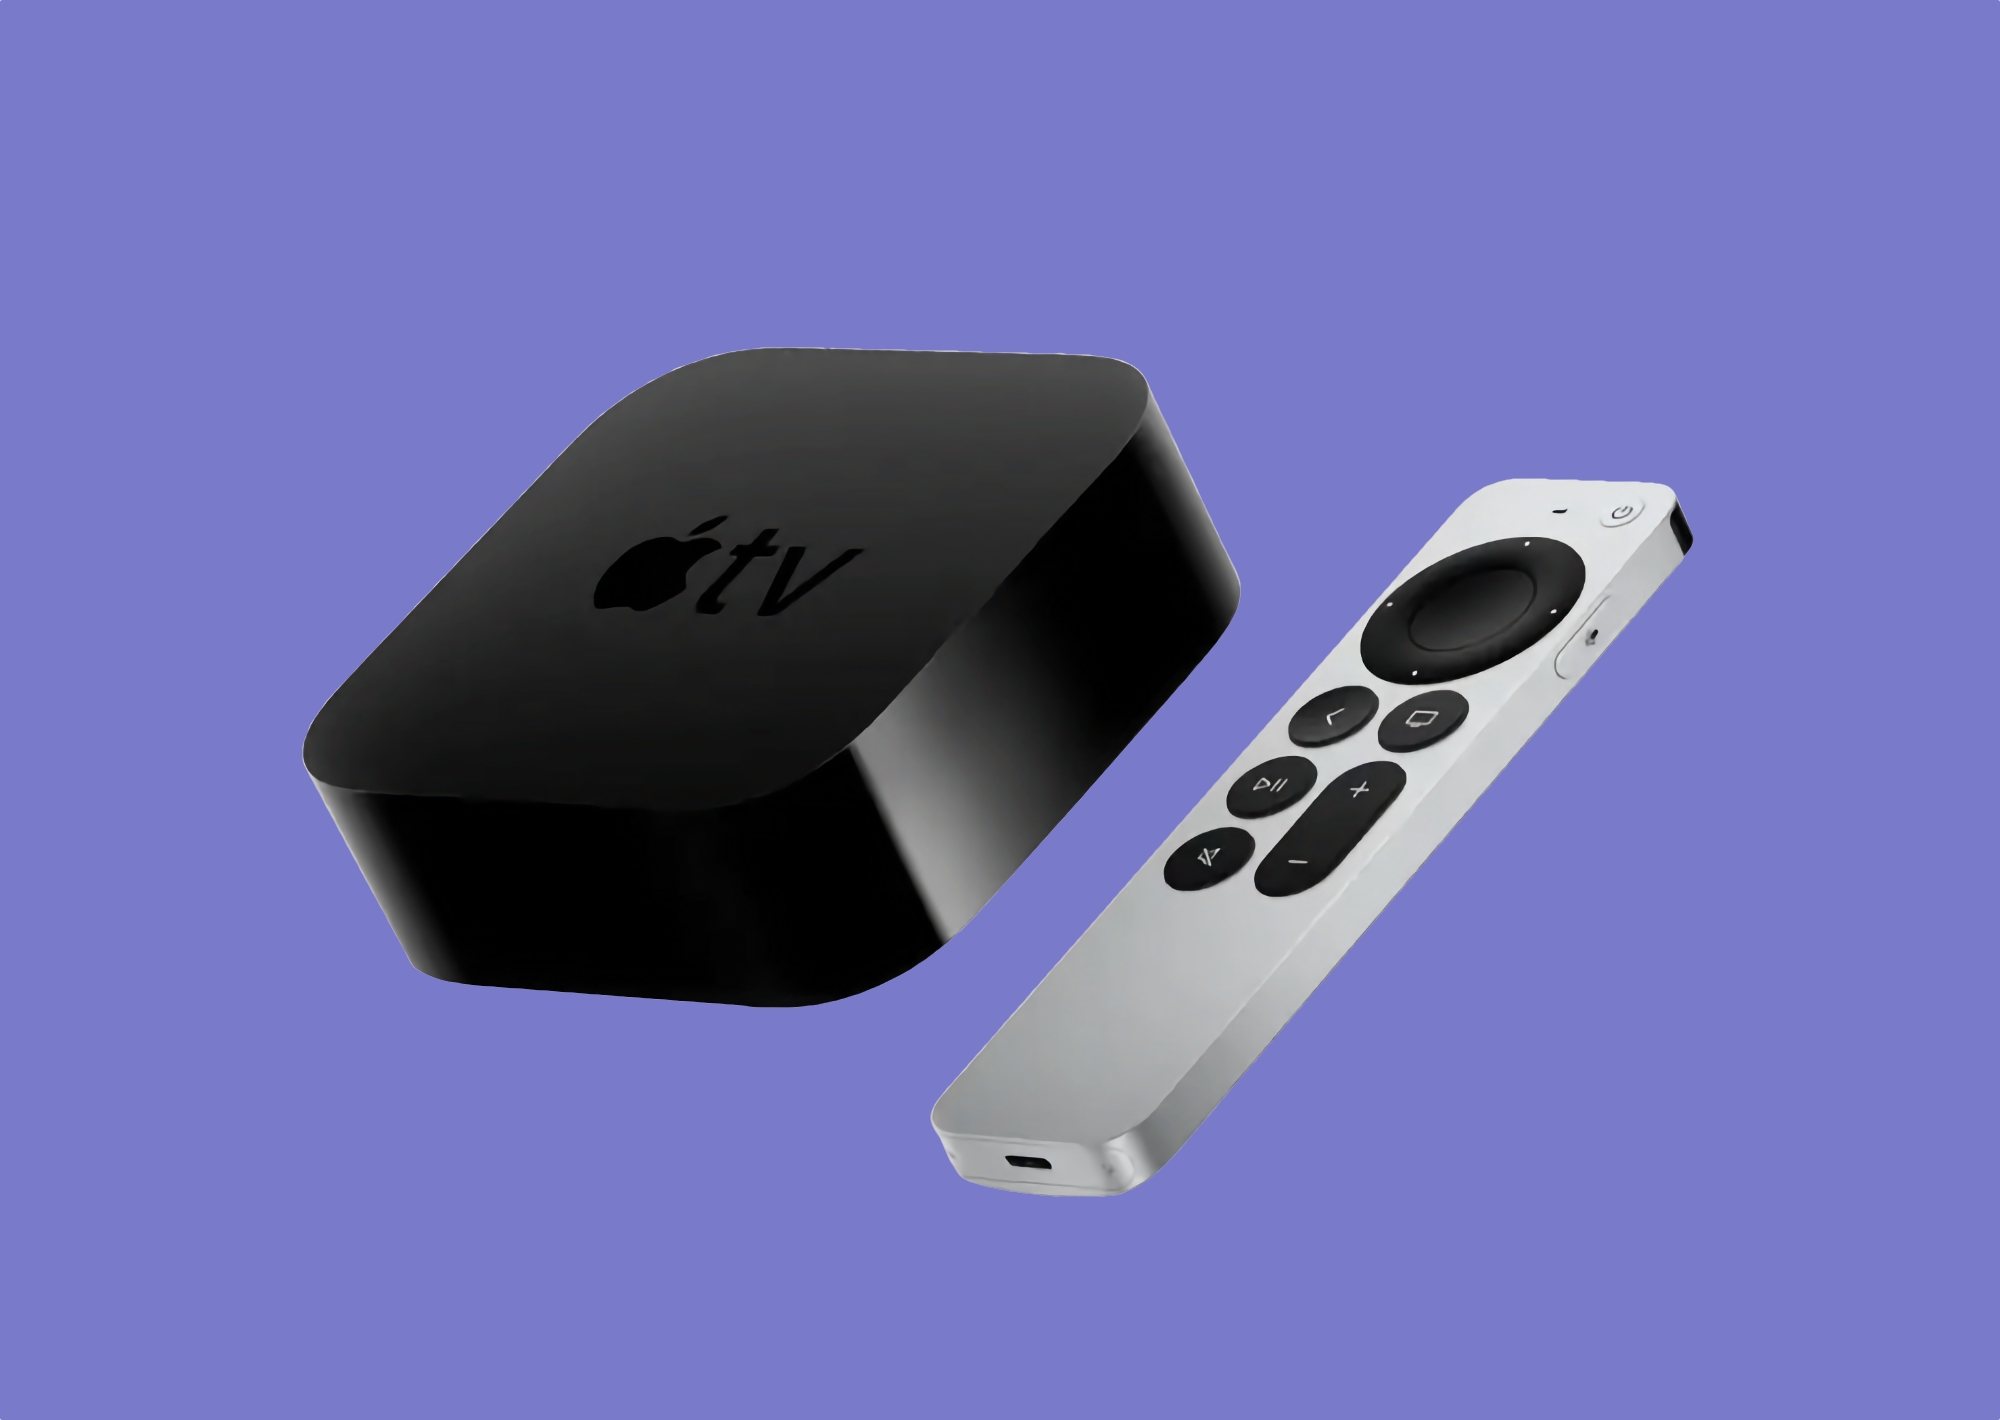 Apple TV 4K (2022) con chip A15 Bionic, USB Type-C, Ethernet, supporto HDR10+ e prezzo a partire da 129 dollari.